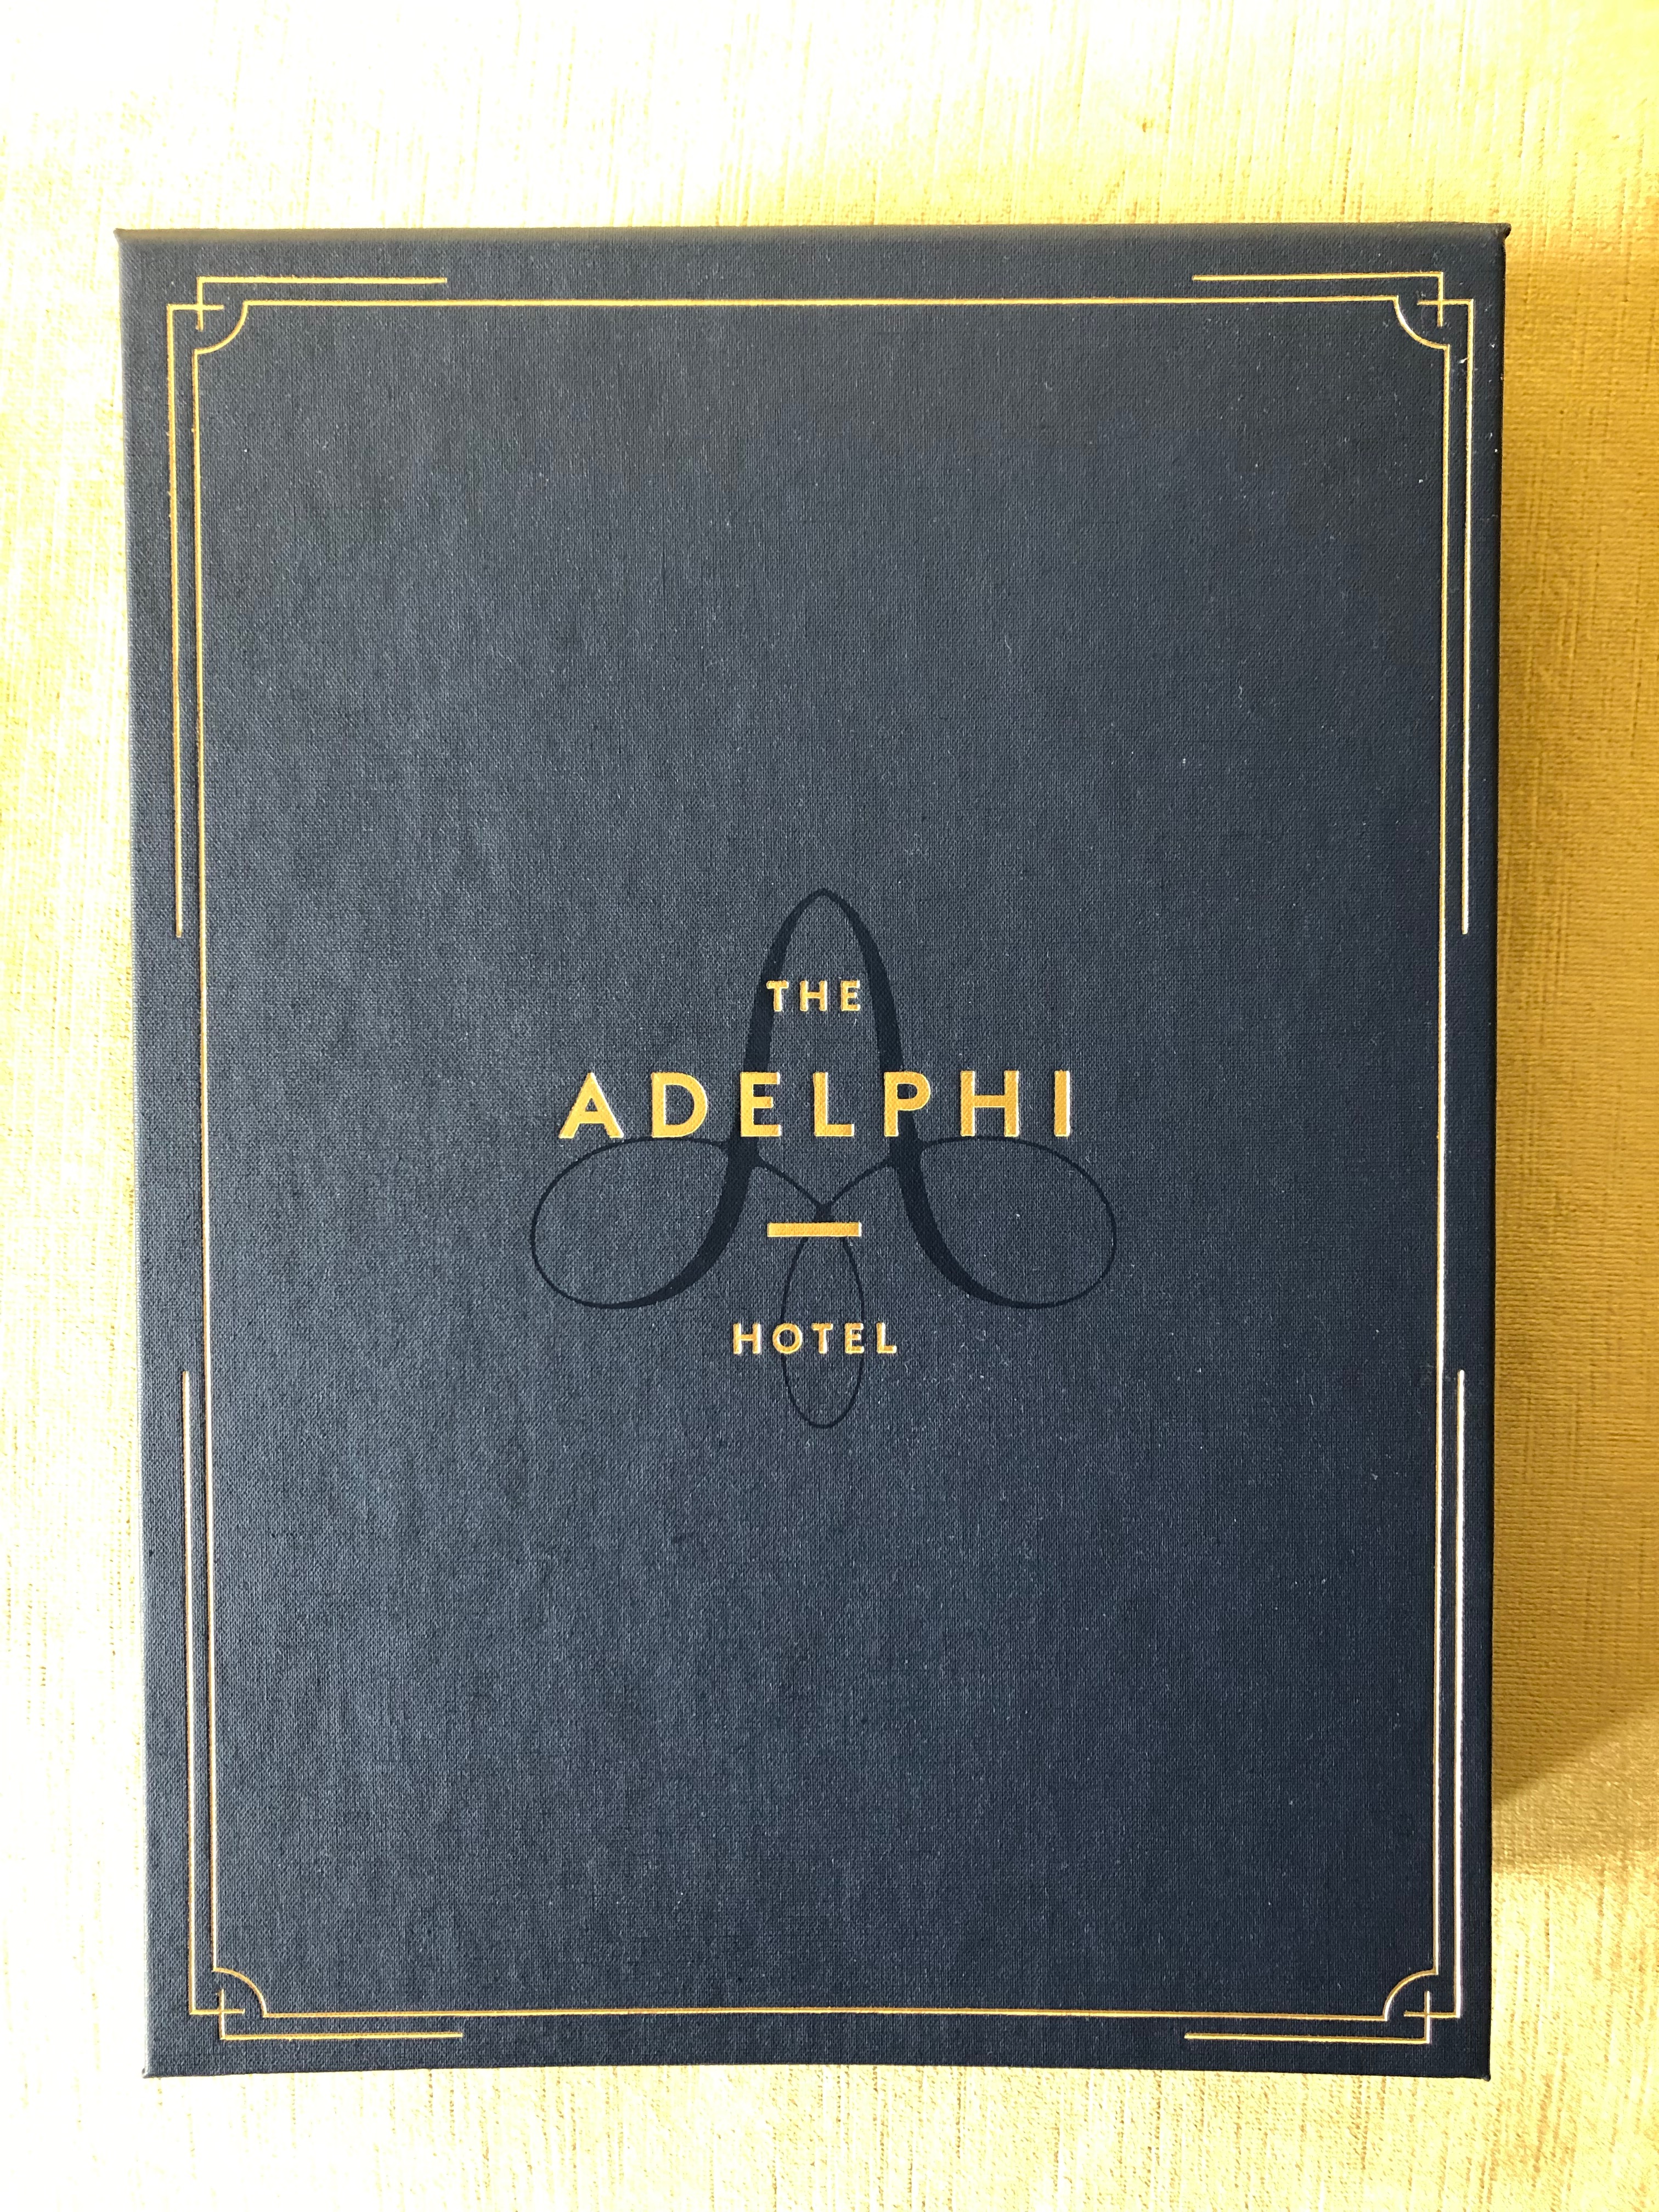 Adelphi Hotel Spotlight